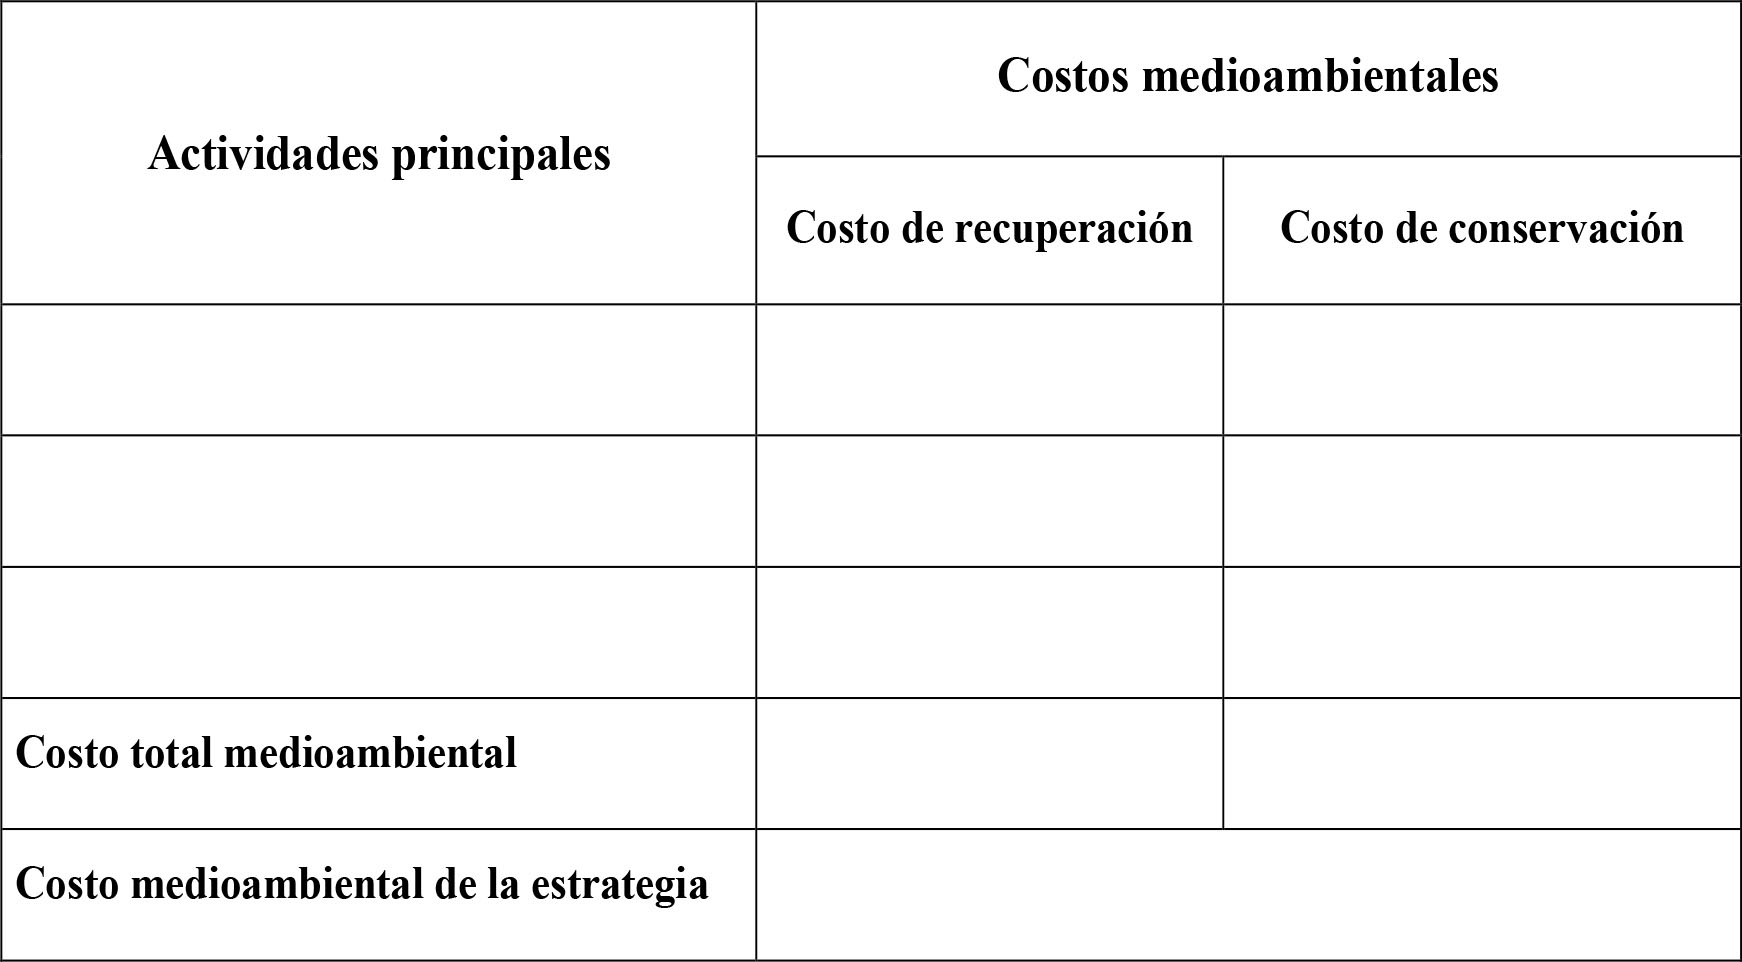 Tabla de muestra para la determinación del costo total medioambiental de la estrategia propuesta